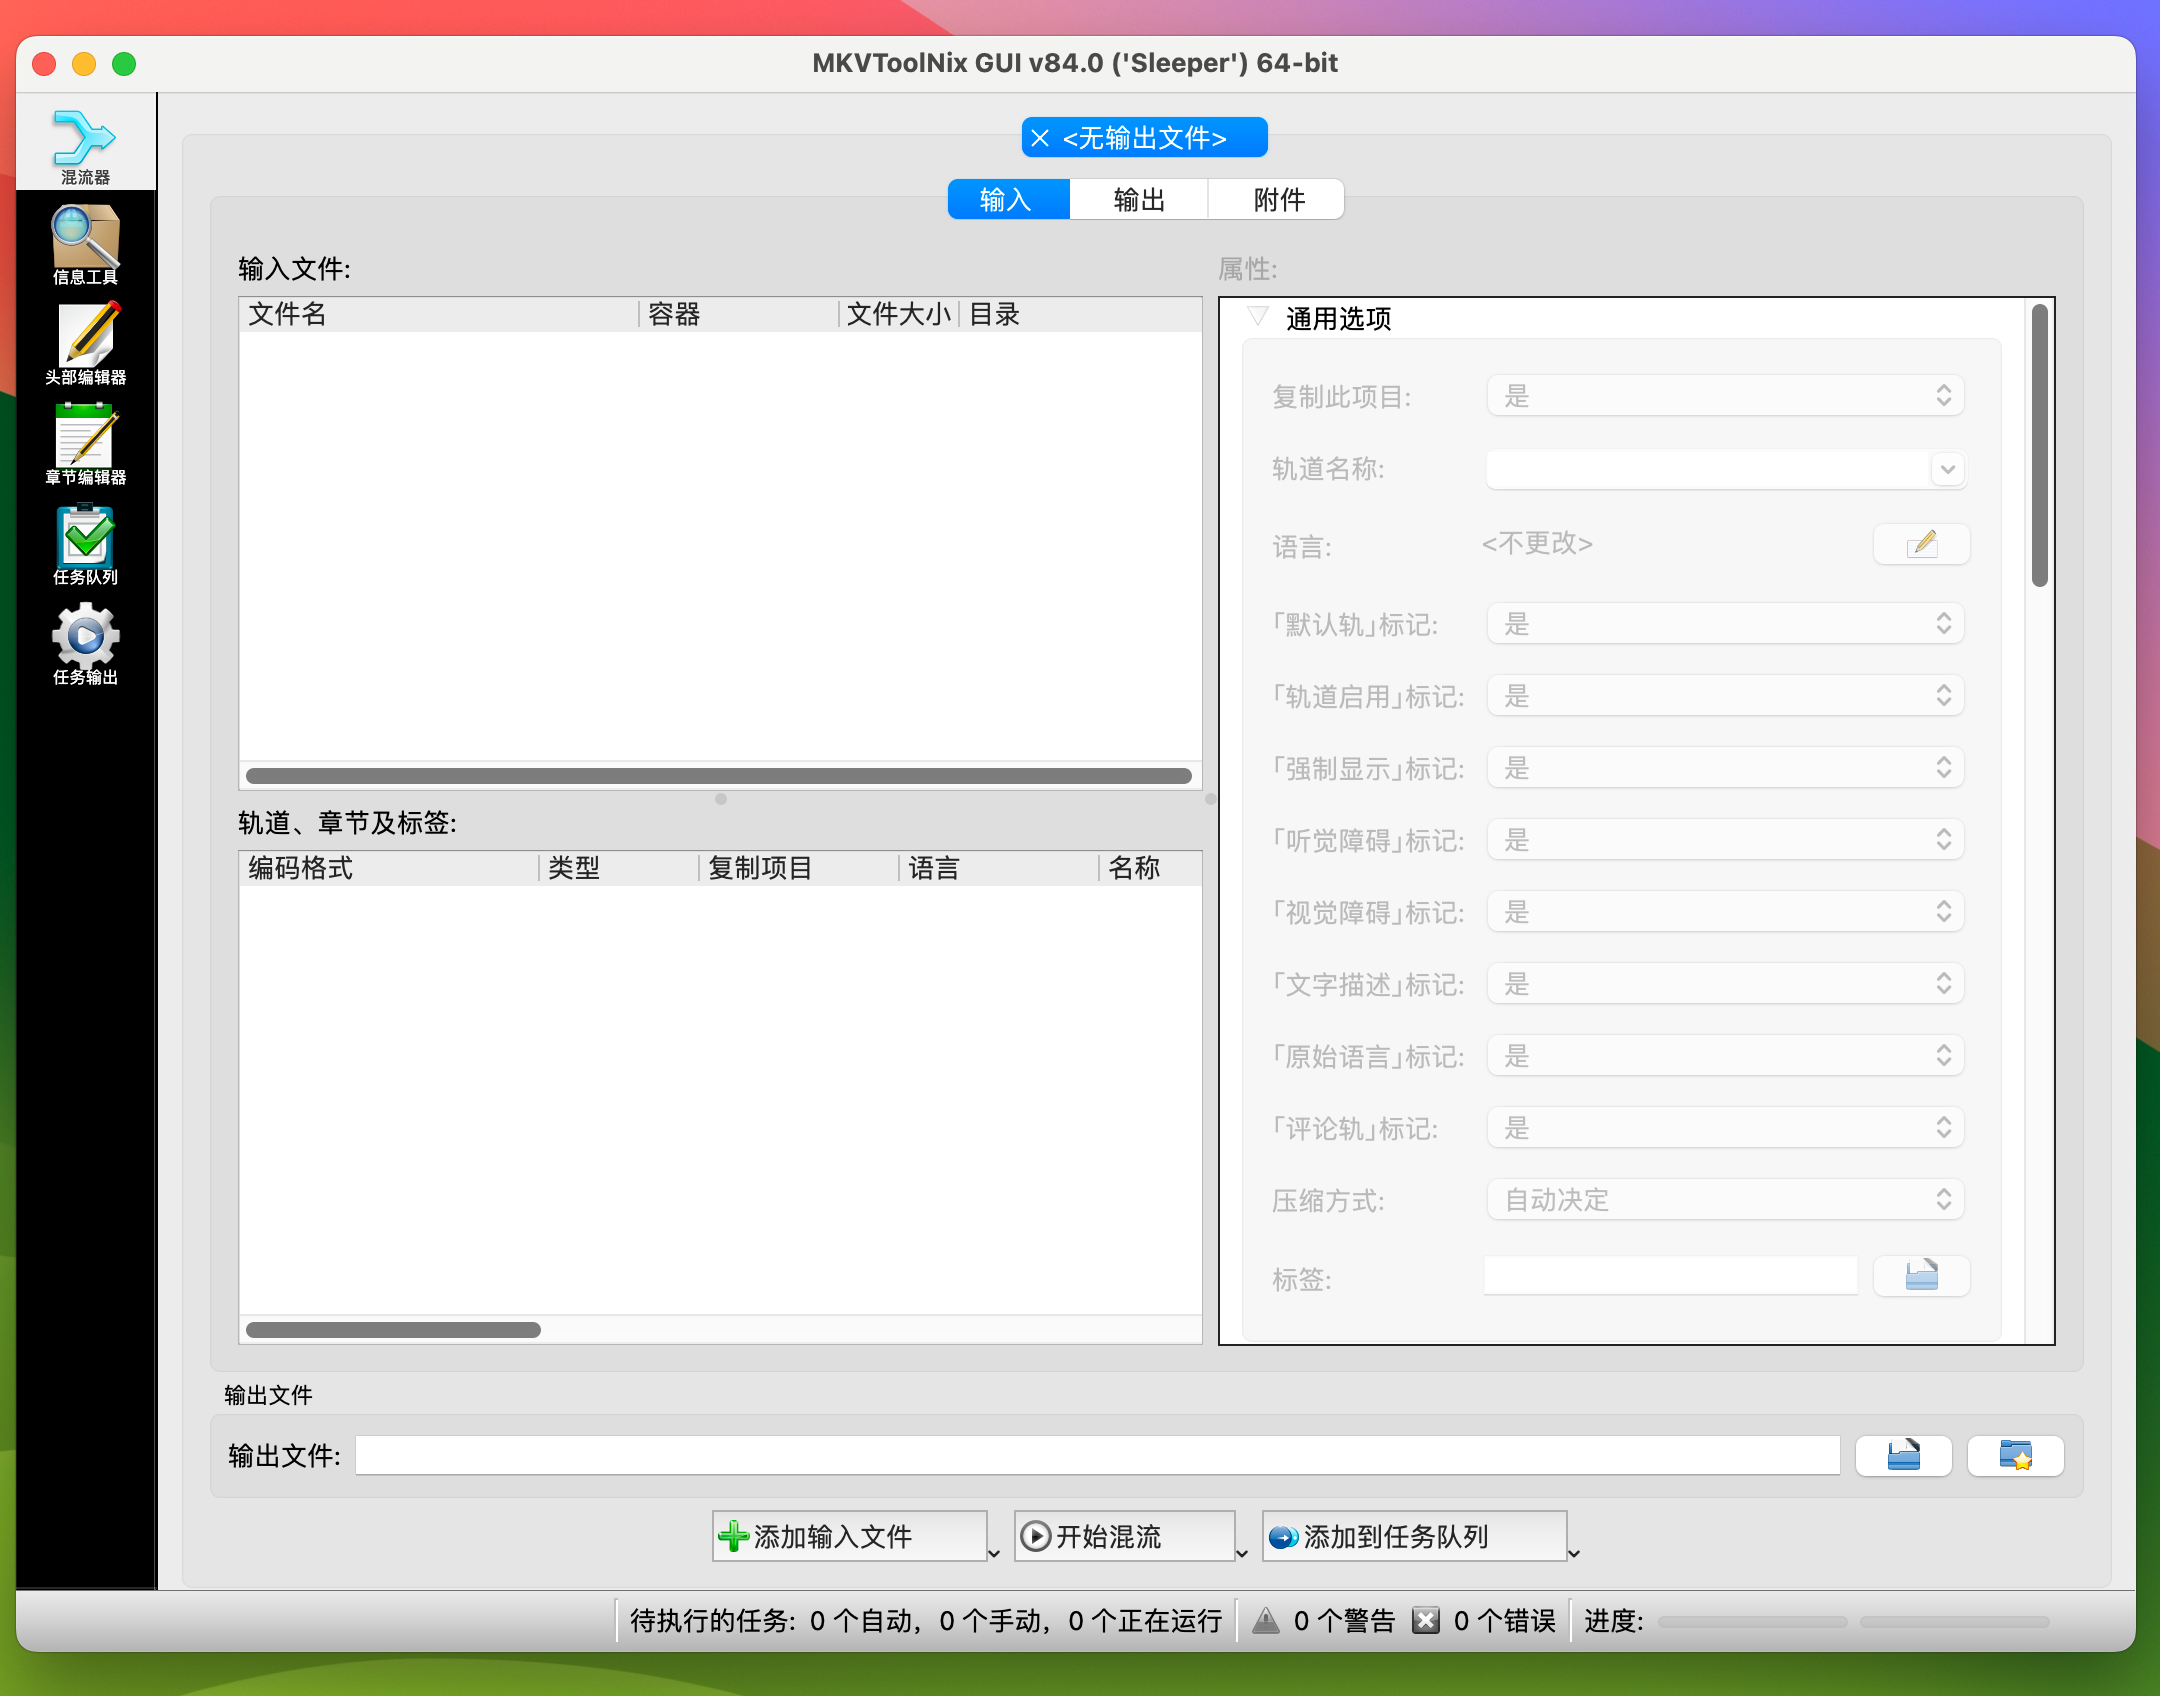 MKVToolNix for Mac v84.0 mkv视频编辑工具 免激活下载-1